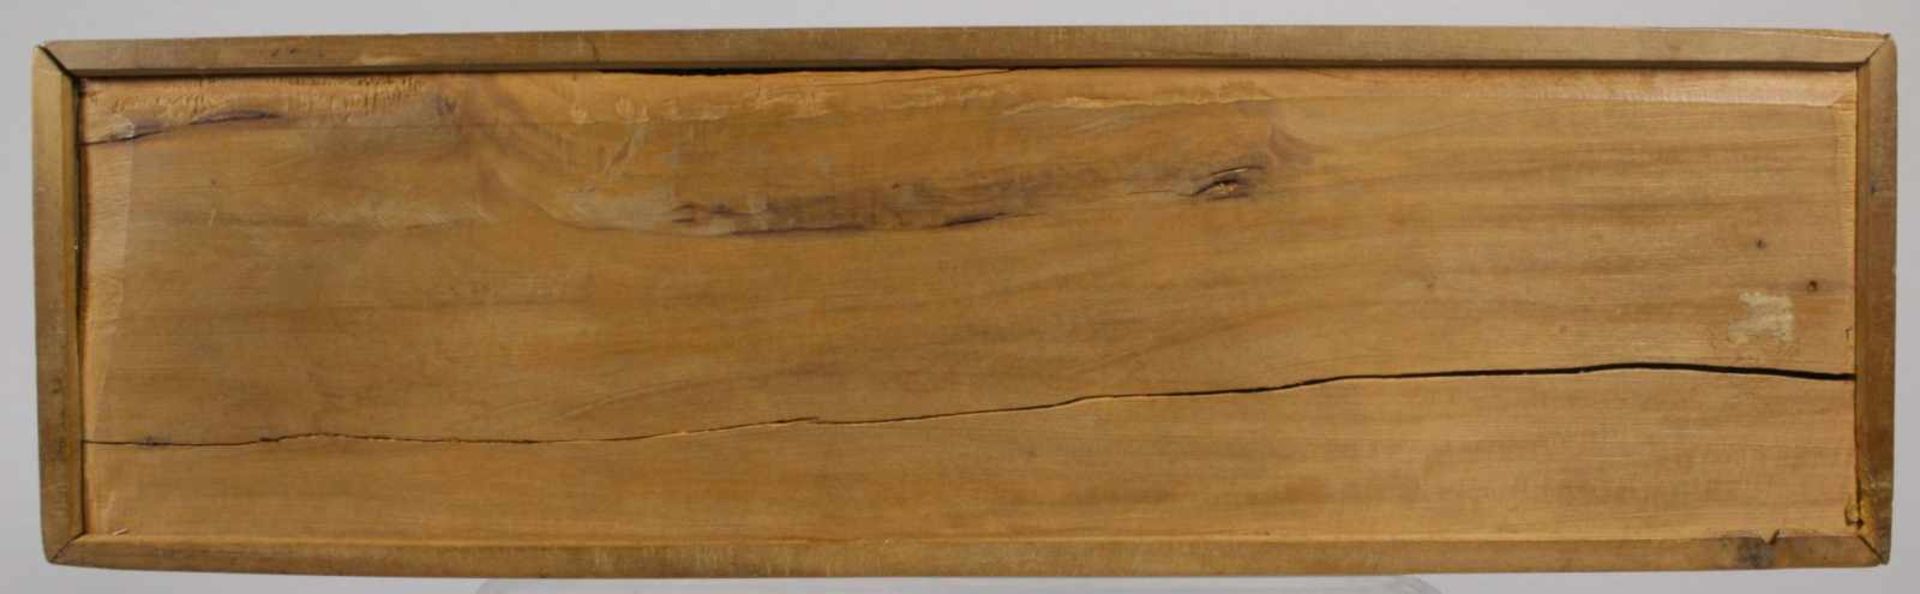 Fächer in Holz-Schatulle, China, 19. Jh., mit Alltagsszenerien mit großer Anzahl vonPersonen, - Bild 17 aus 17